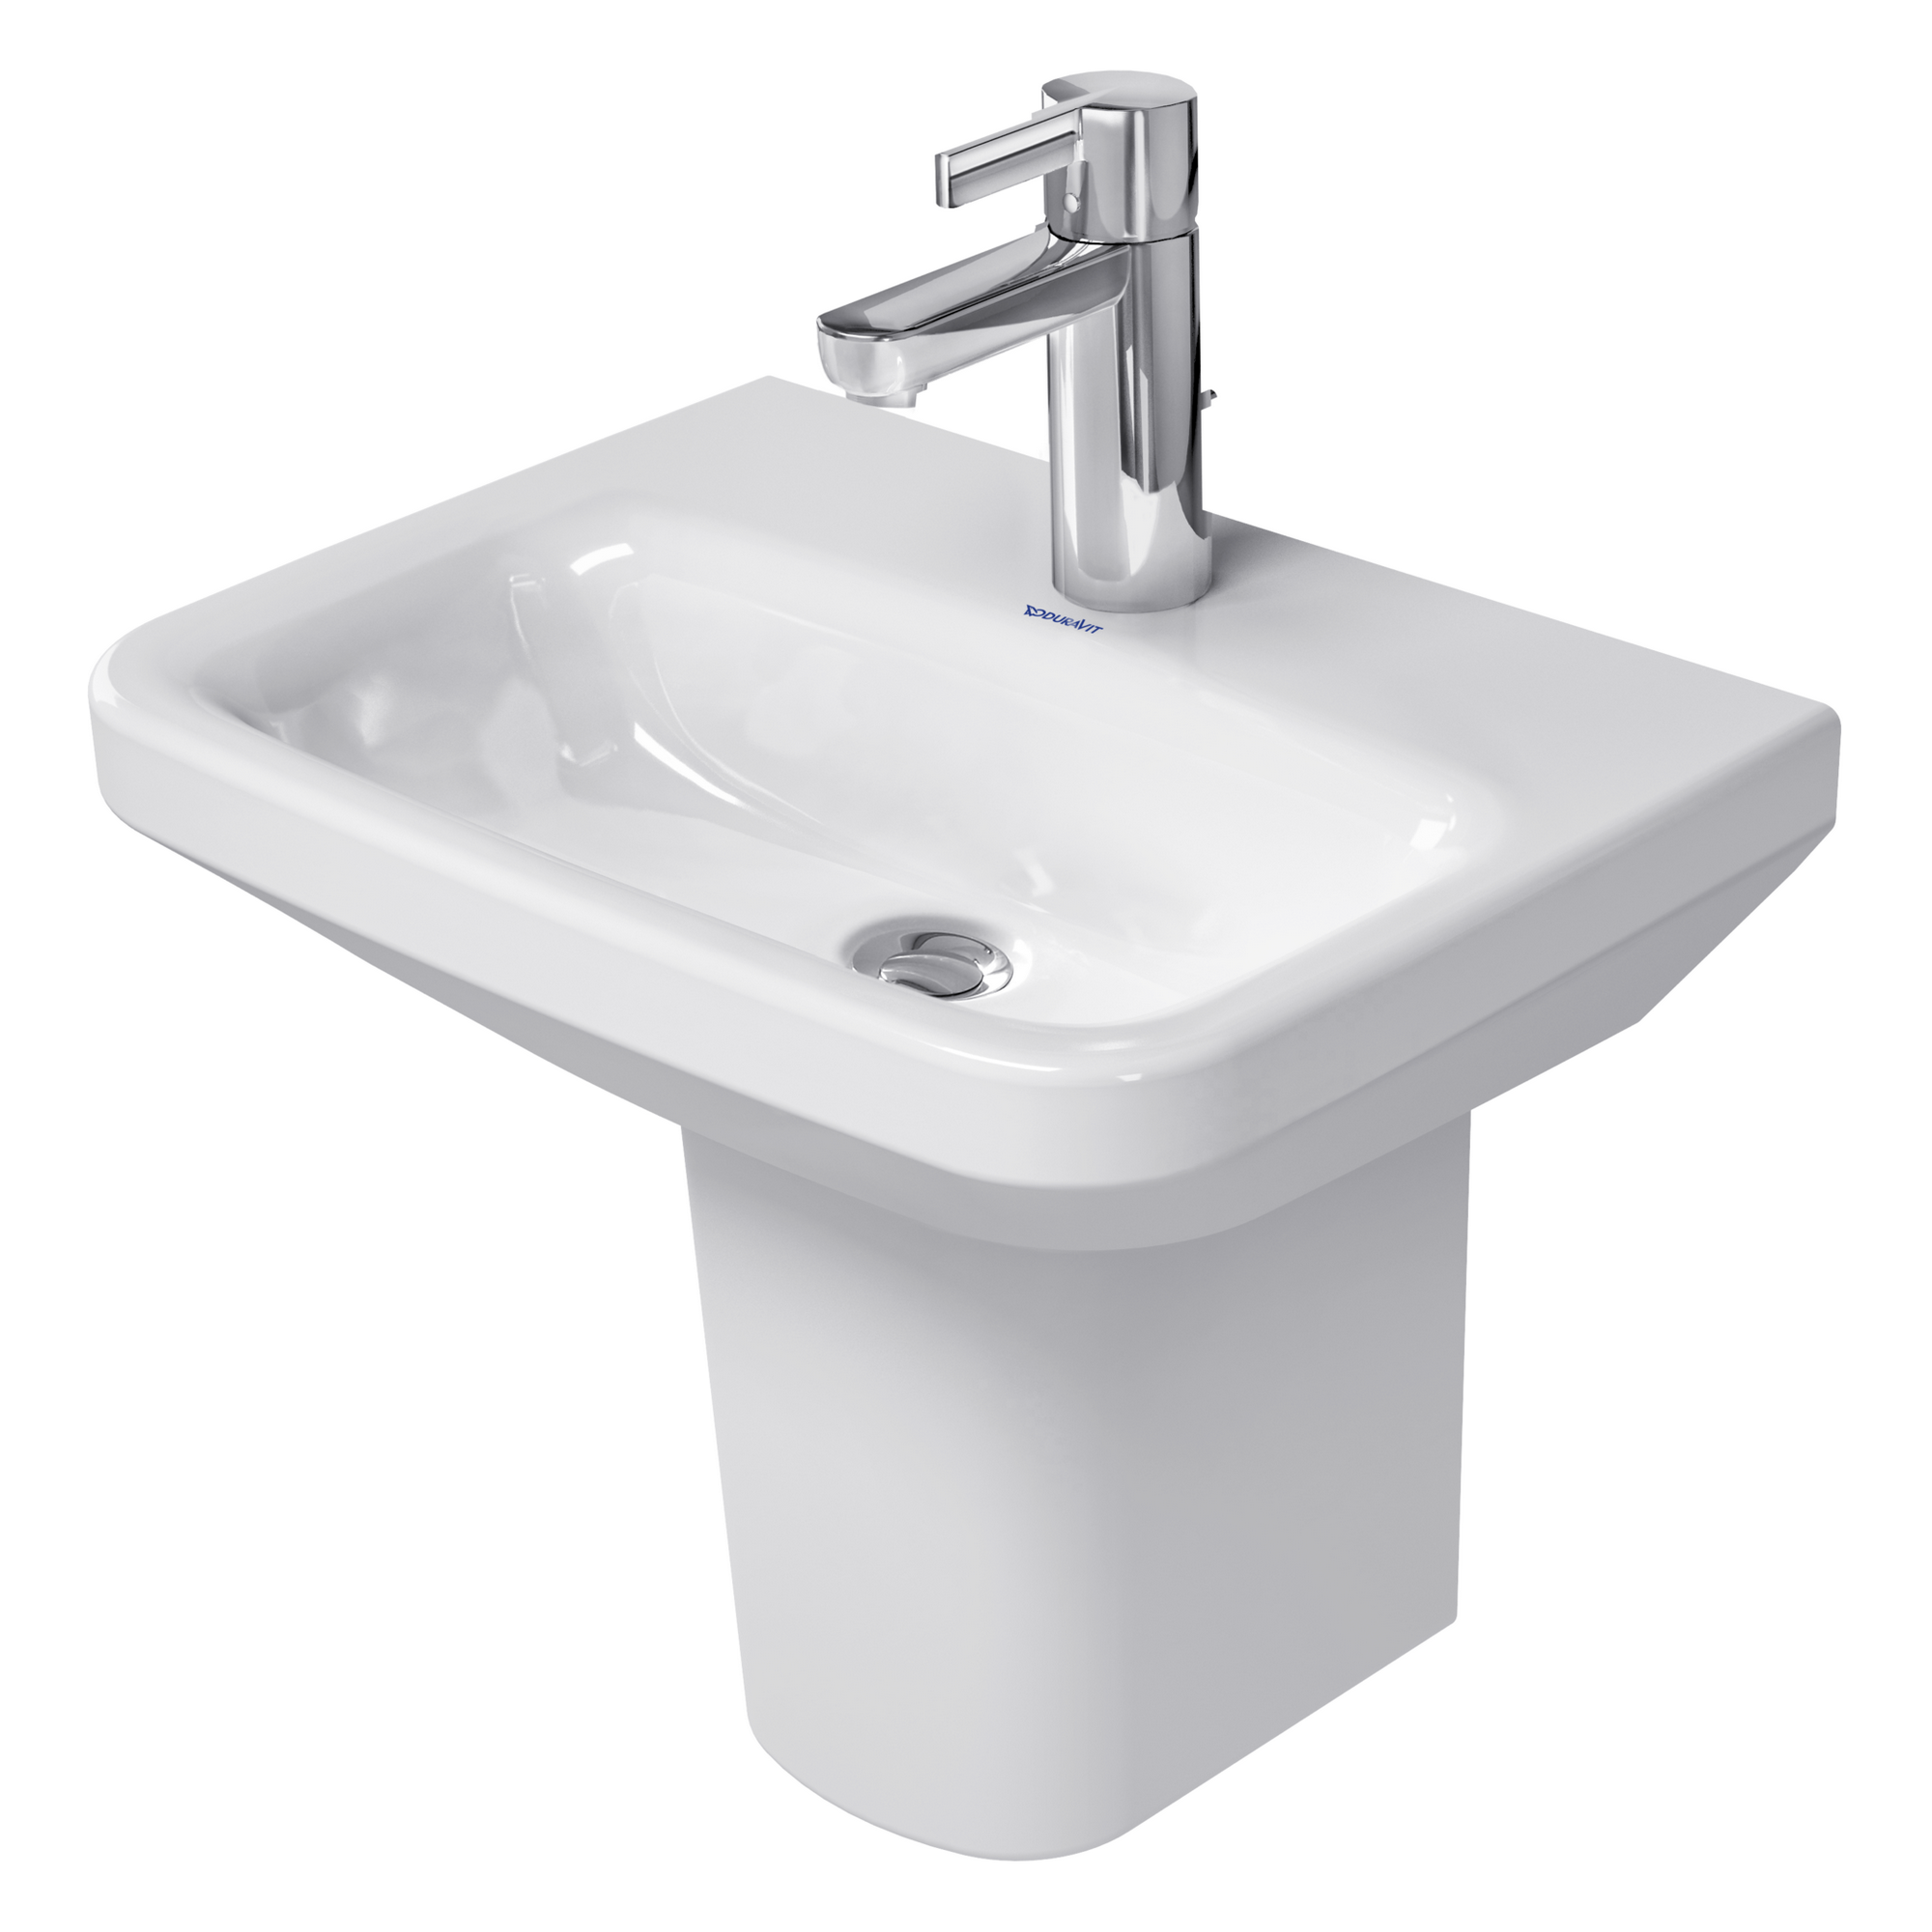 Handwaschbecken 'Durstyle' 45 x34 cm weiß + product picture